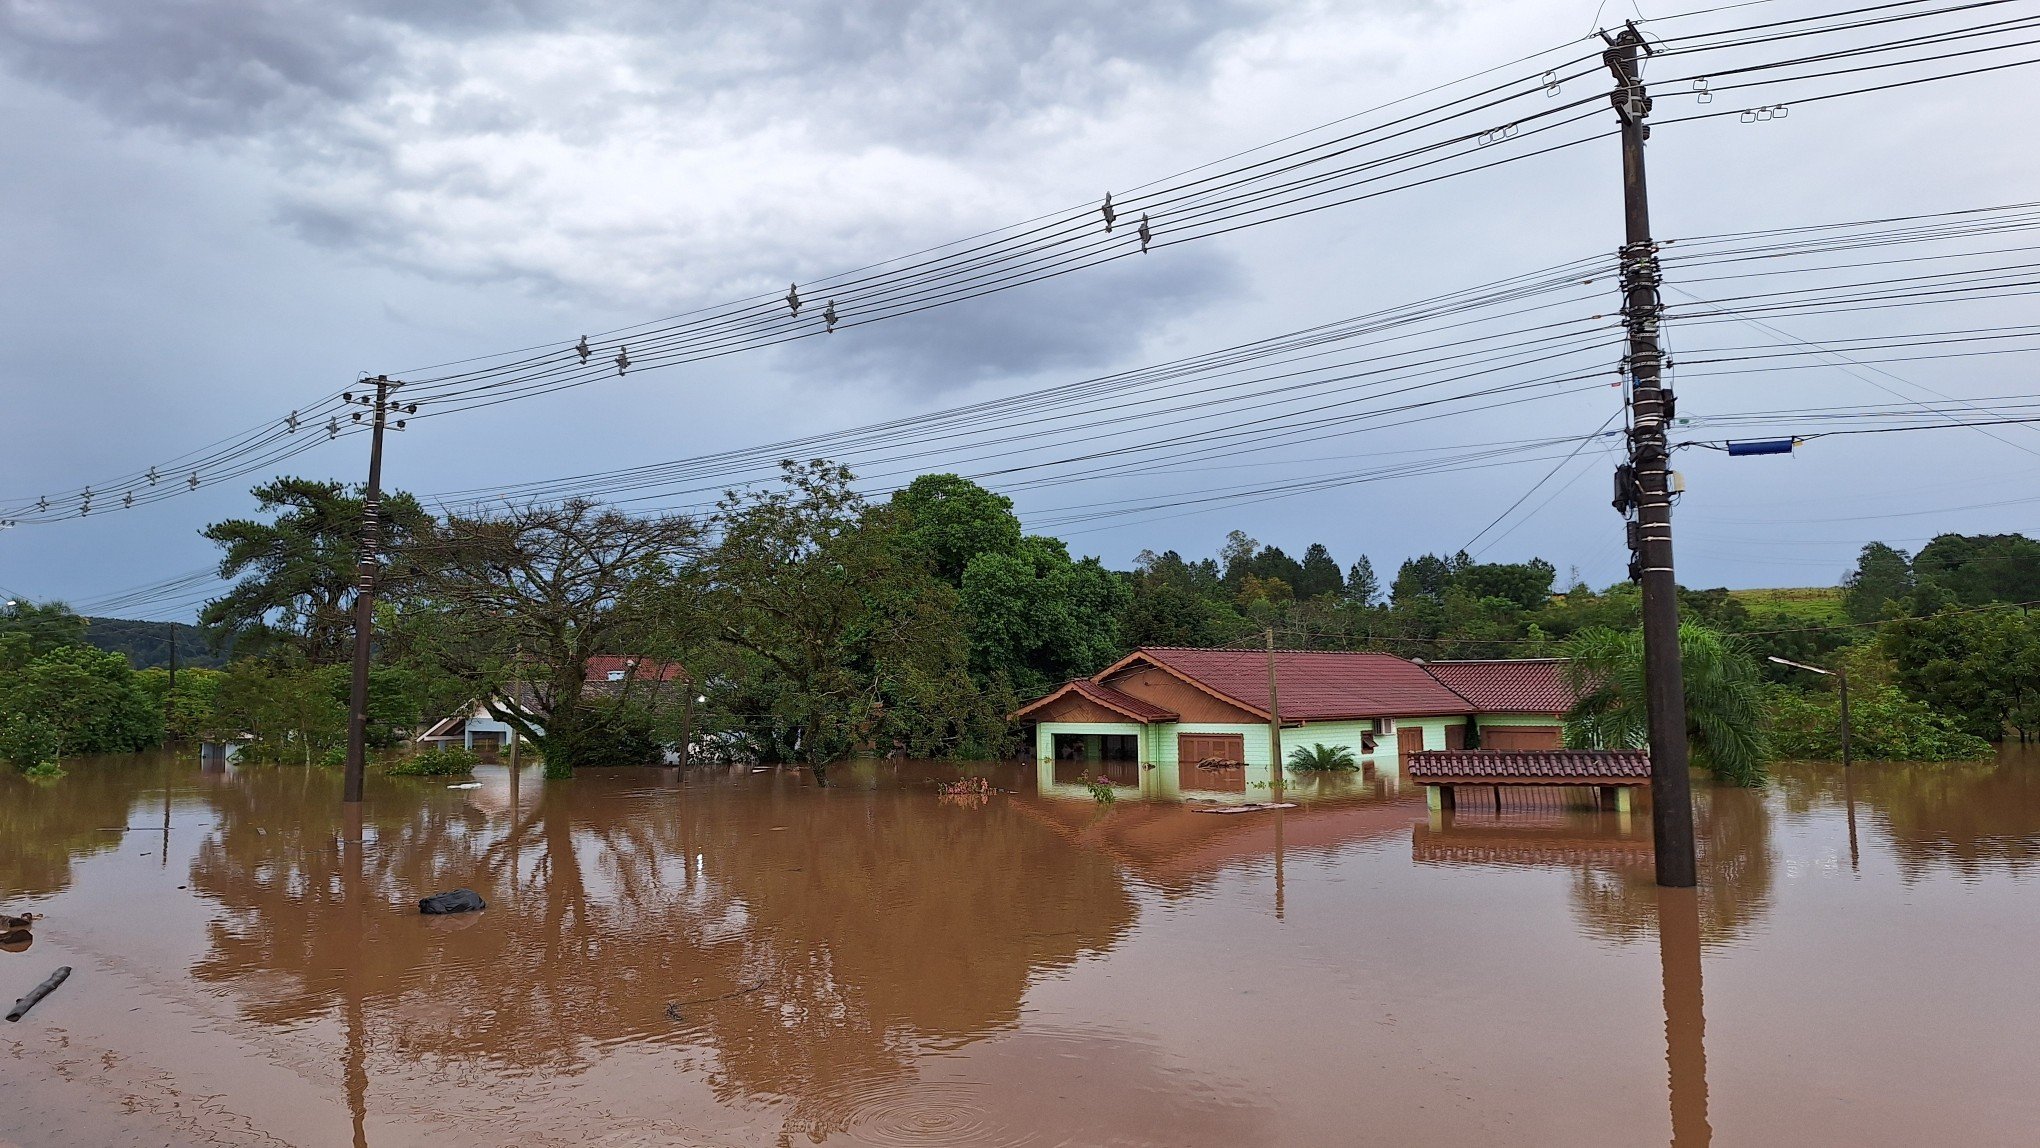 Laudo meteorológico gratuito está disponível para atingidos pela enchente do RS; veja como solicitar